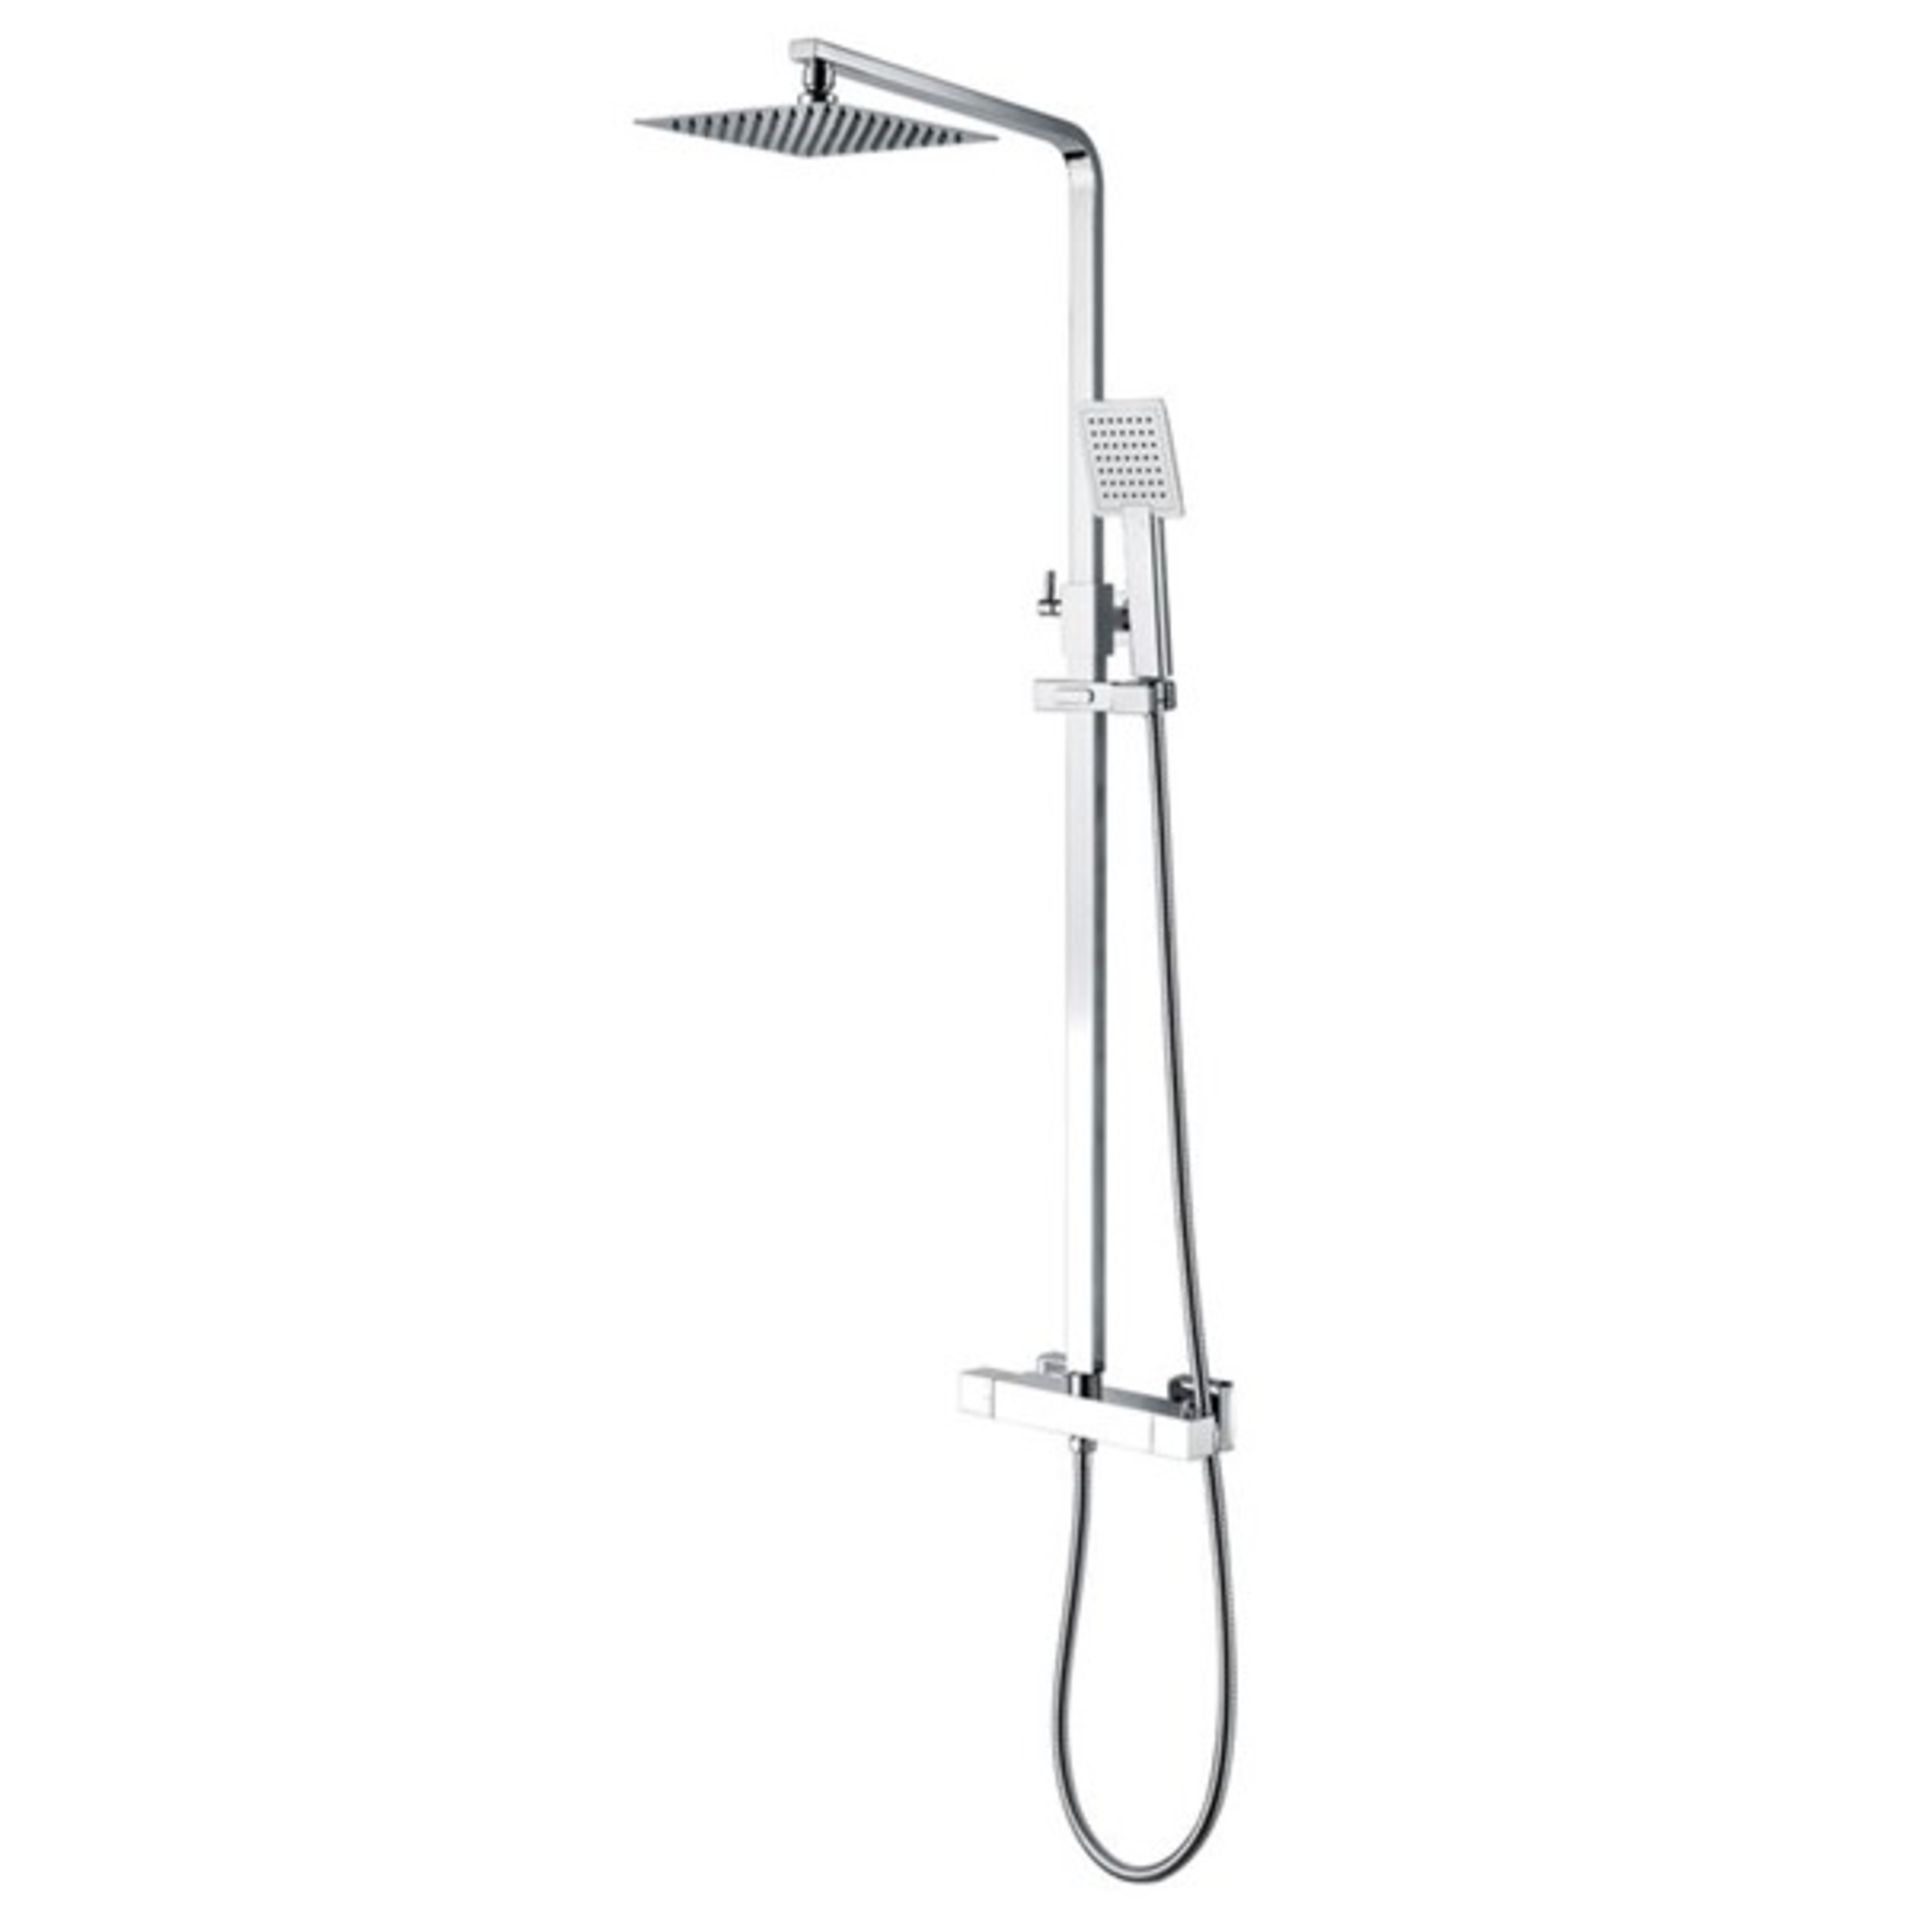 RRP £200 - Hershberger Mixer Shower with Adjustable Shower Head